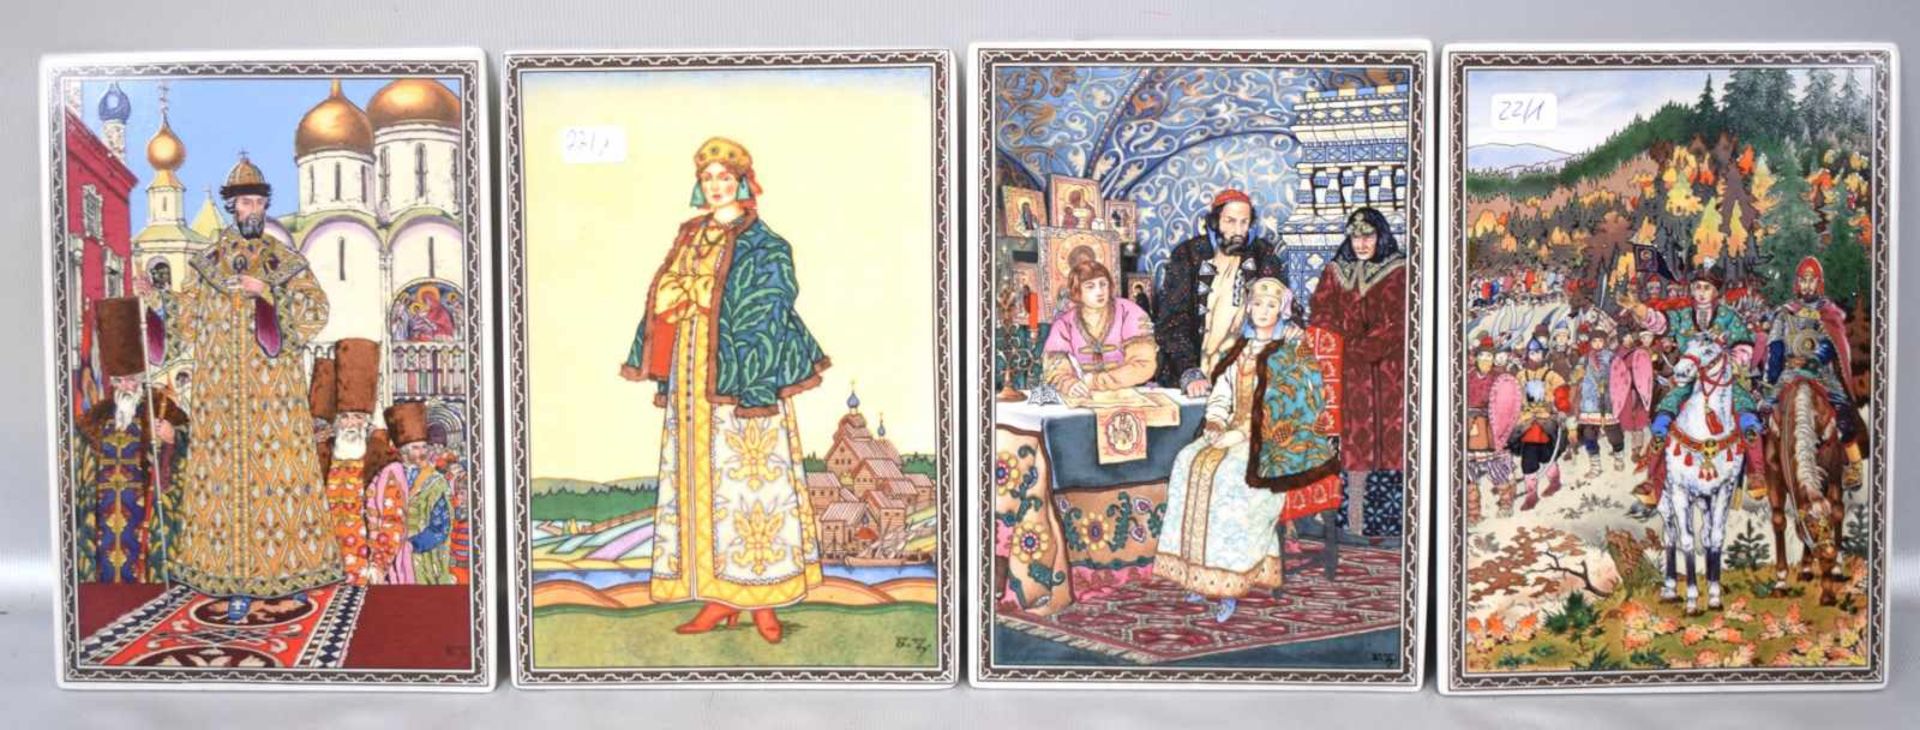 Vier PorzellanbilderDie Krönung des Zaren, im Palast des Zaren und Tatiana, 12 X 17 cm, FM